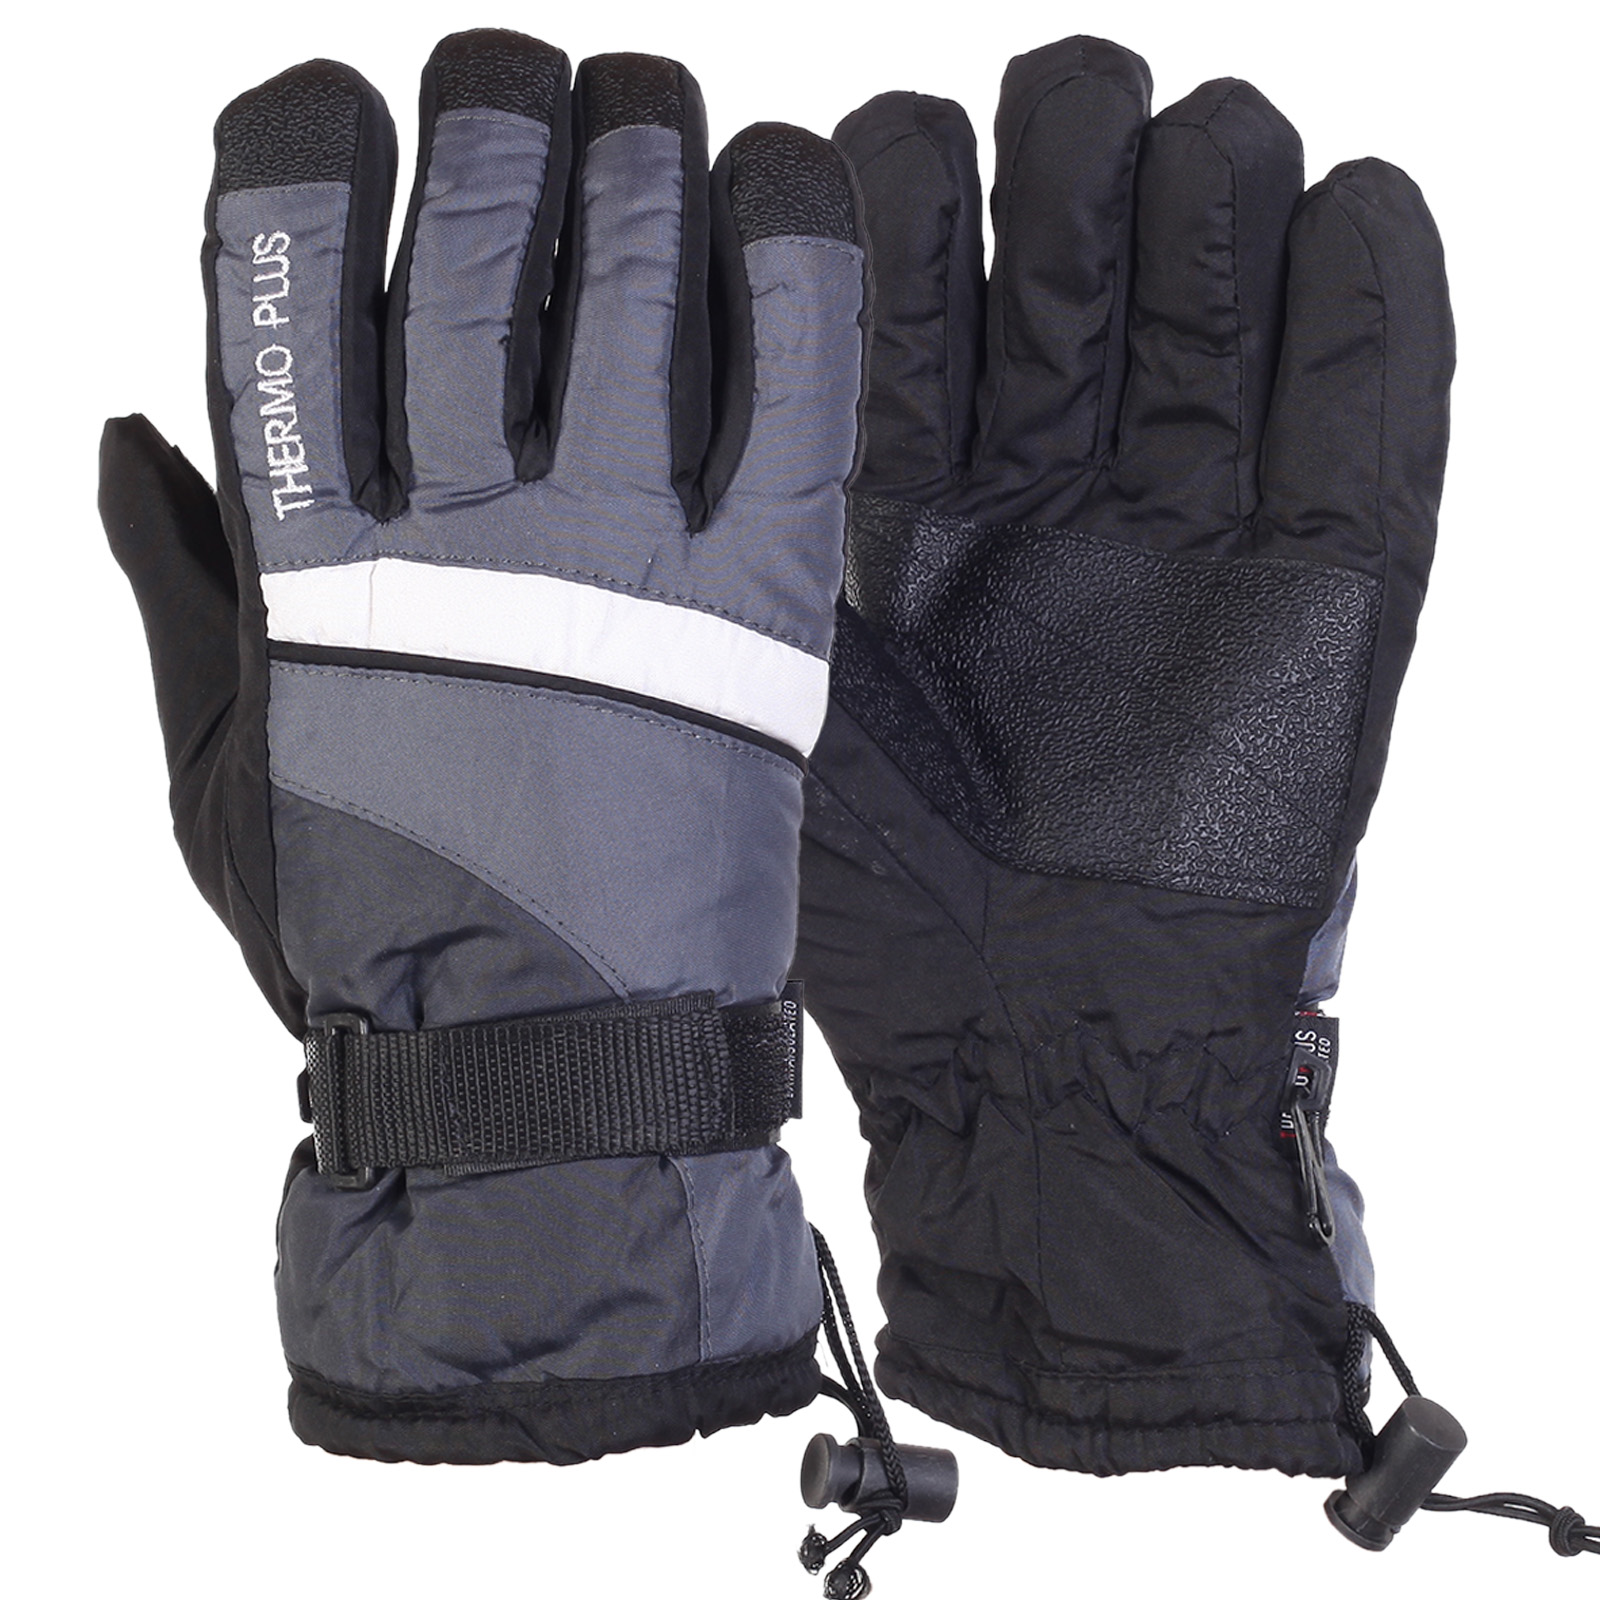 Зимние горнолыжные перчатки от ТМ Thermo Plus